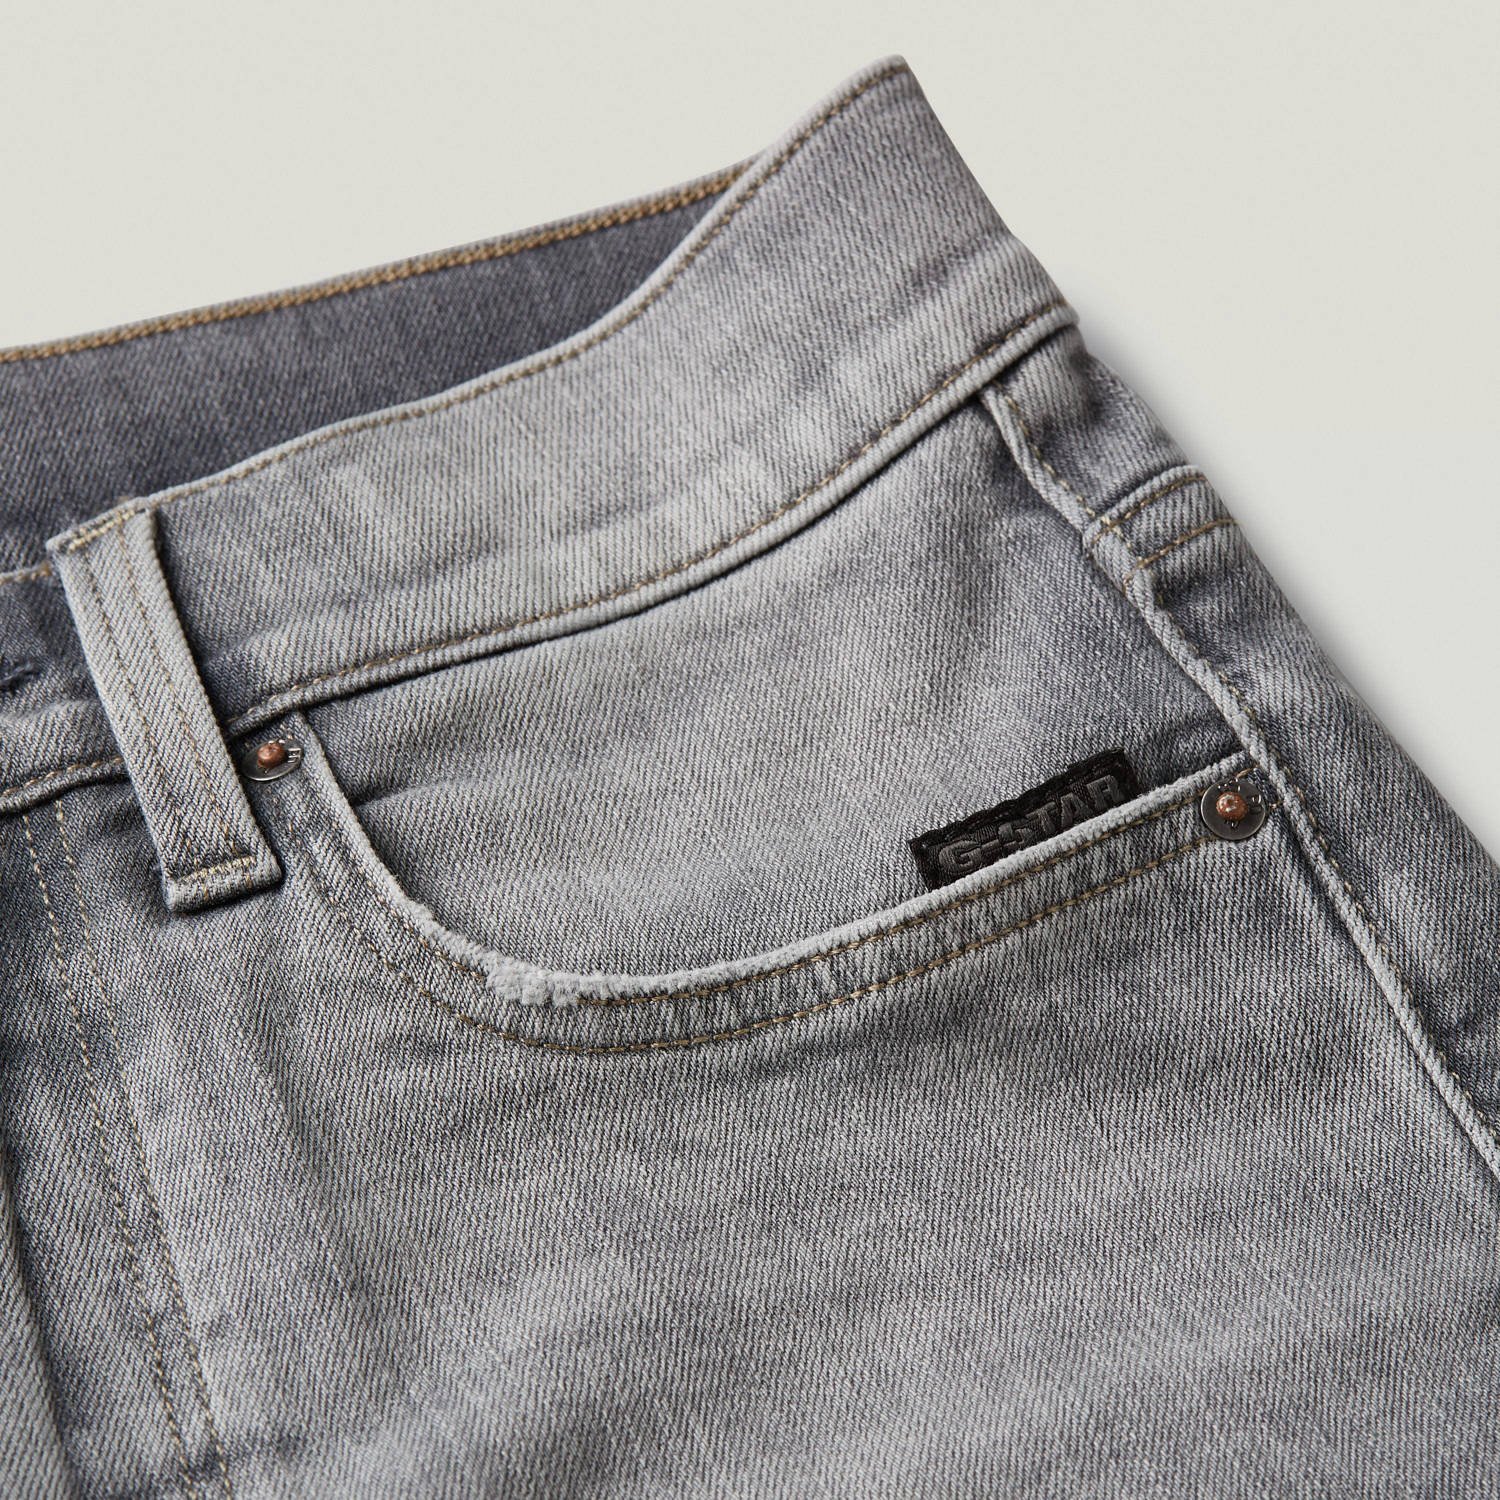 G-Star RAW 3301 slim shorts premium denim short faded grey neblina